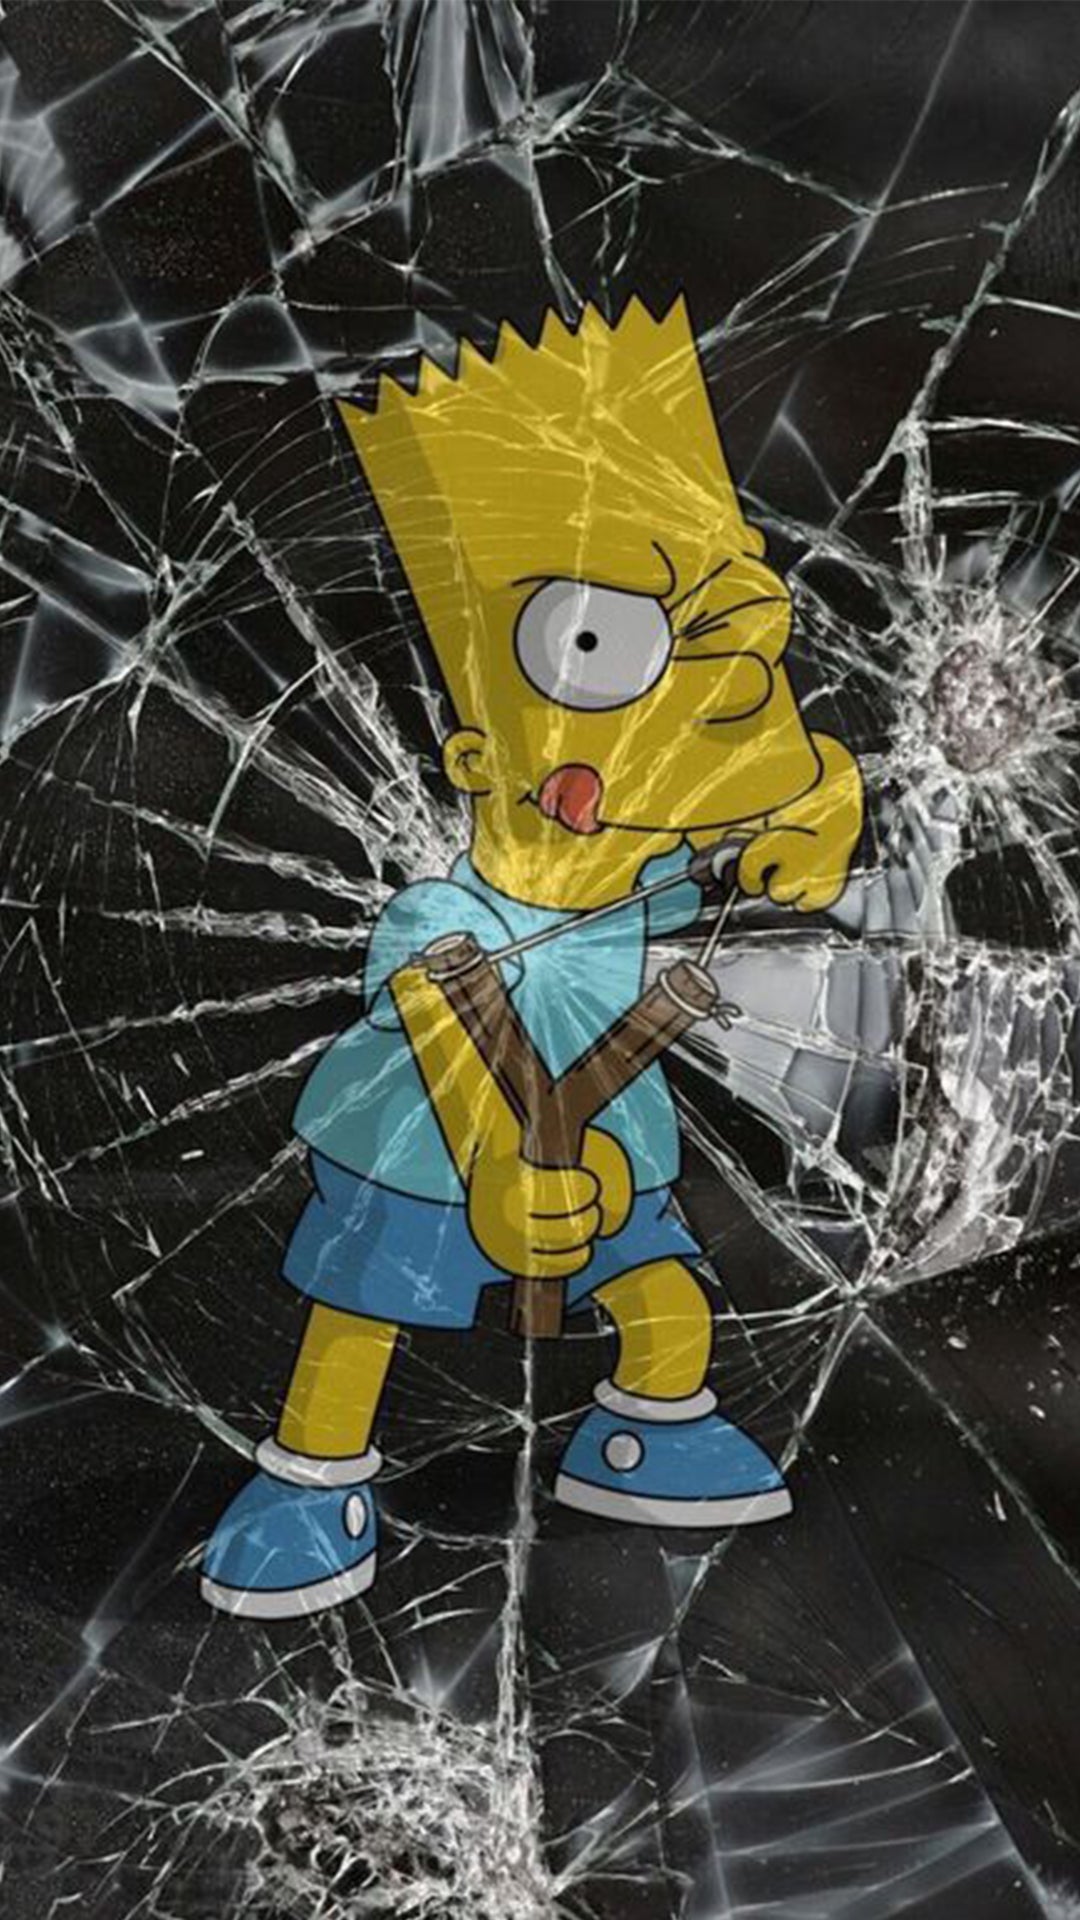 Bart Simpson tire vers nous avec un lance pierre et casse l’écran.